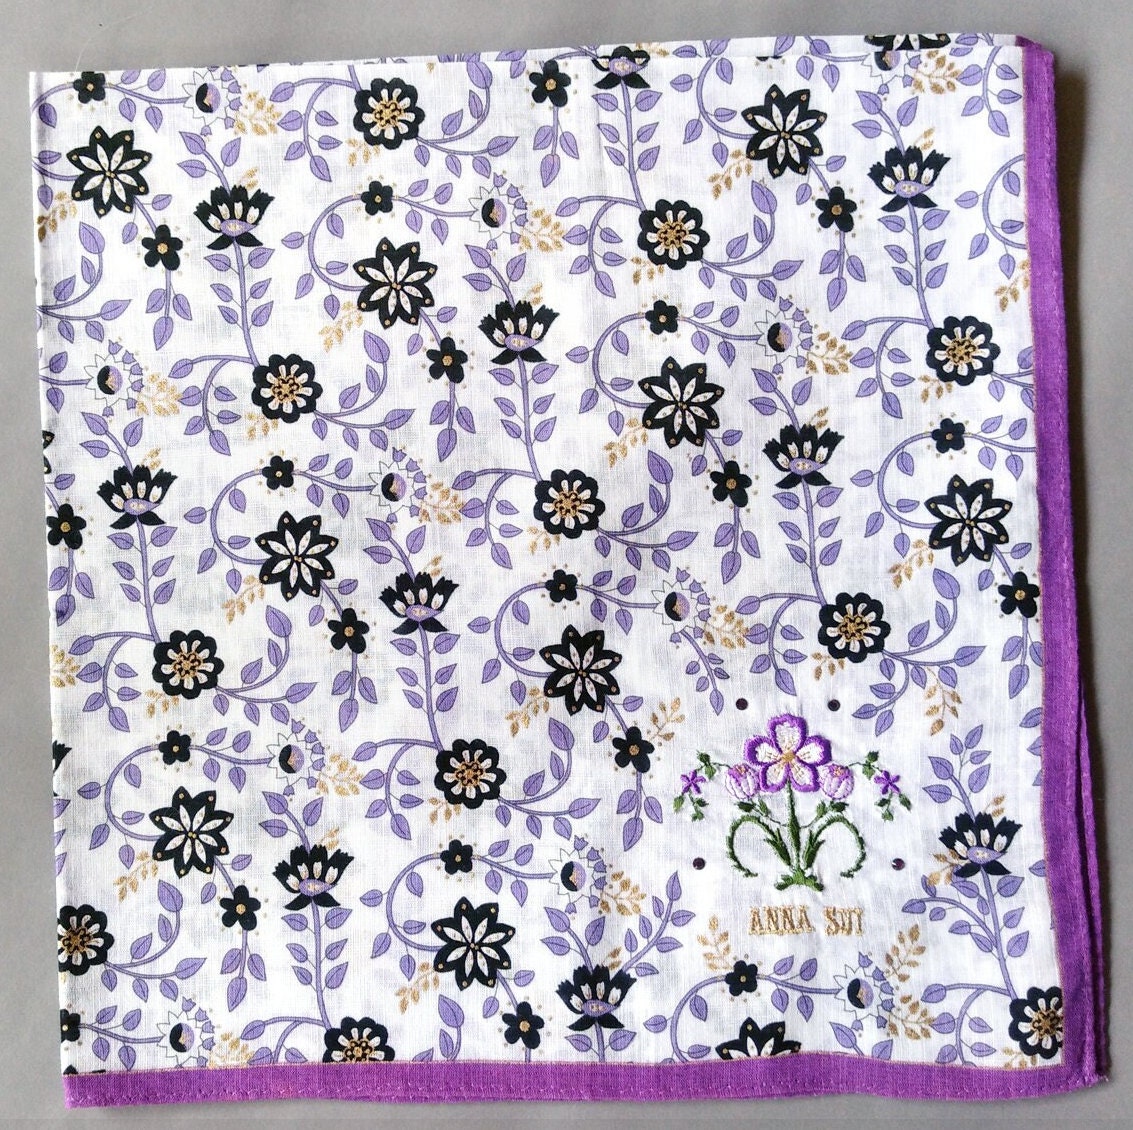 Anna Sui Vintage Taschentuch Floral Geschenk Für Sie 19.5 "x 19" I Kostenlose Lieferung Auf Bestellung 35 Usd Kauft Einfach Mehrere Artikel Zusammen von OrangeSodaPanda